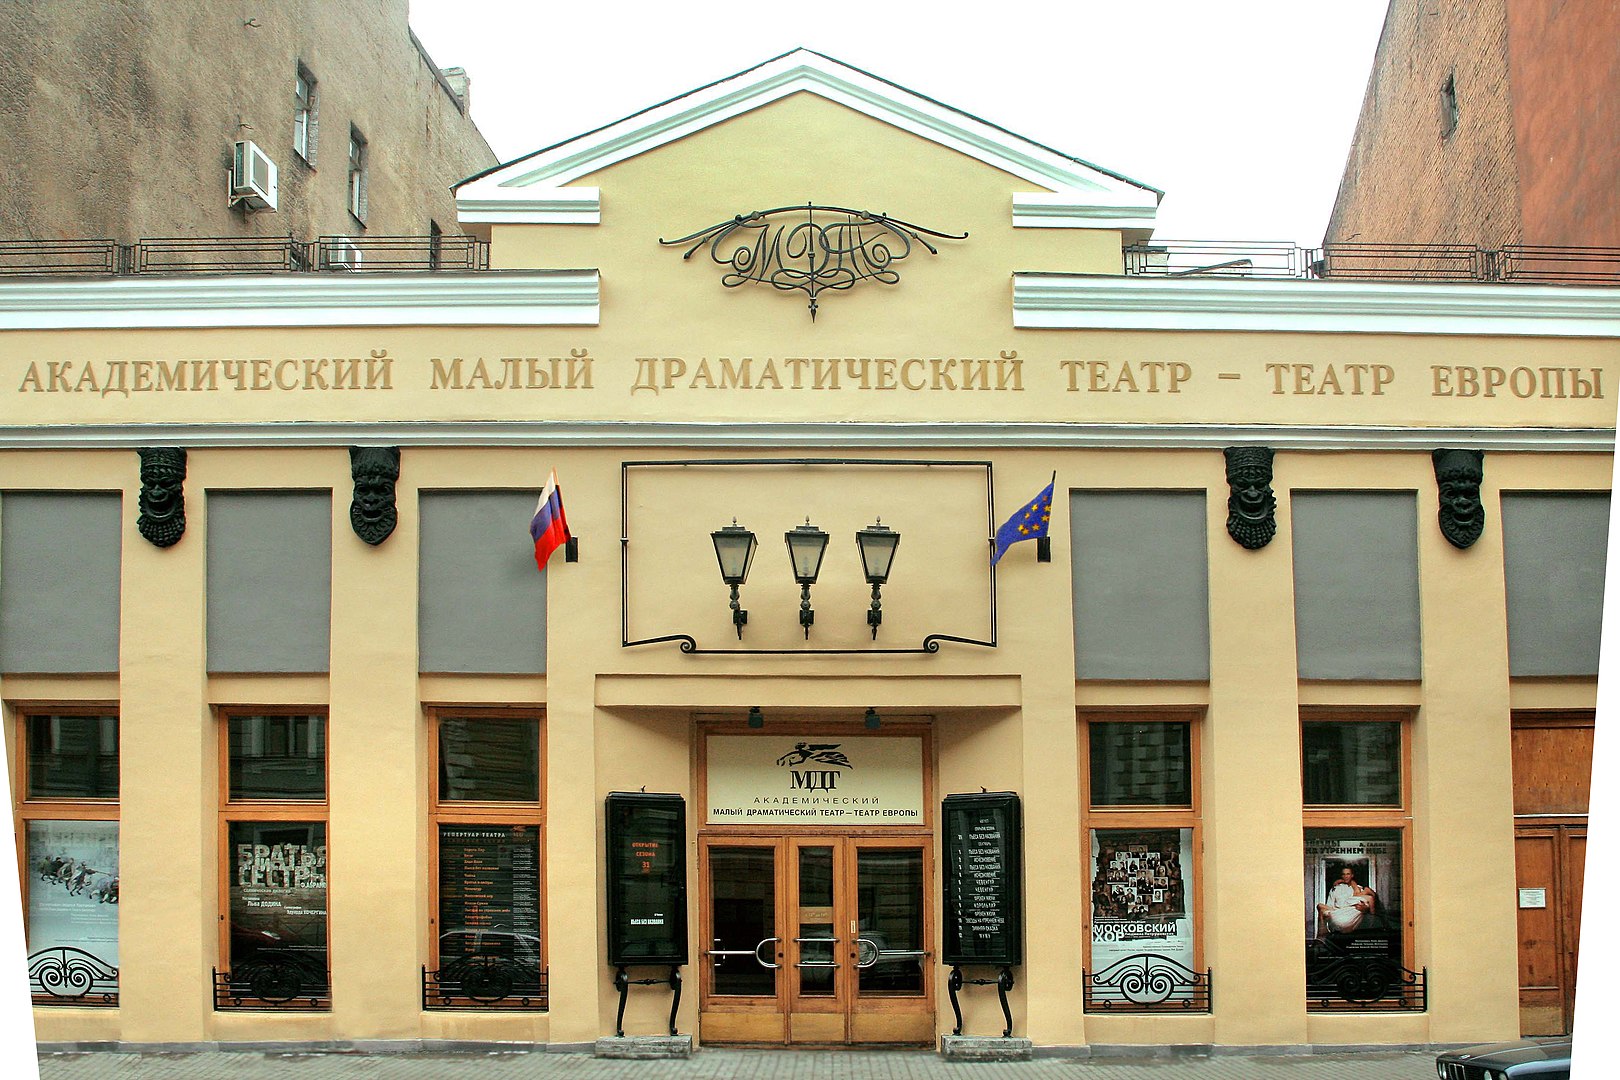 Малый драматический театр в Санкт-Петербурге. Фото Владимир Кольцов, CC BY-SA 4.0.